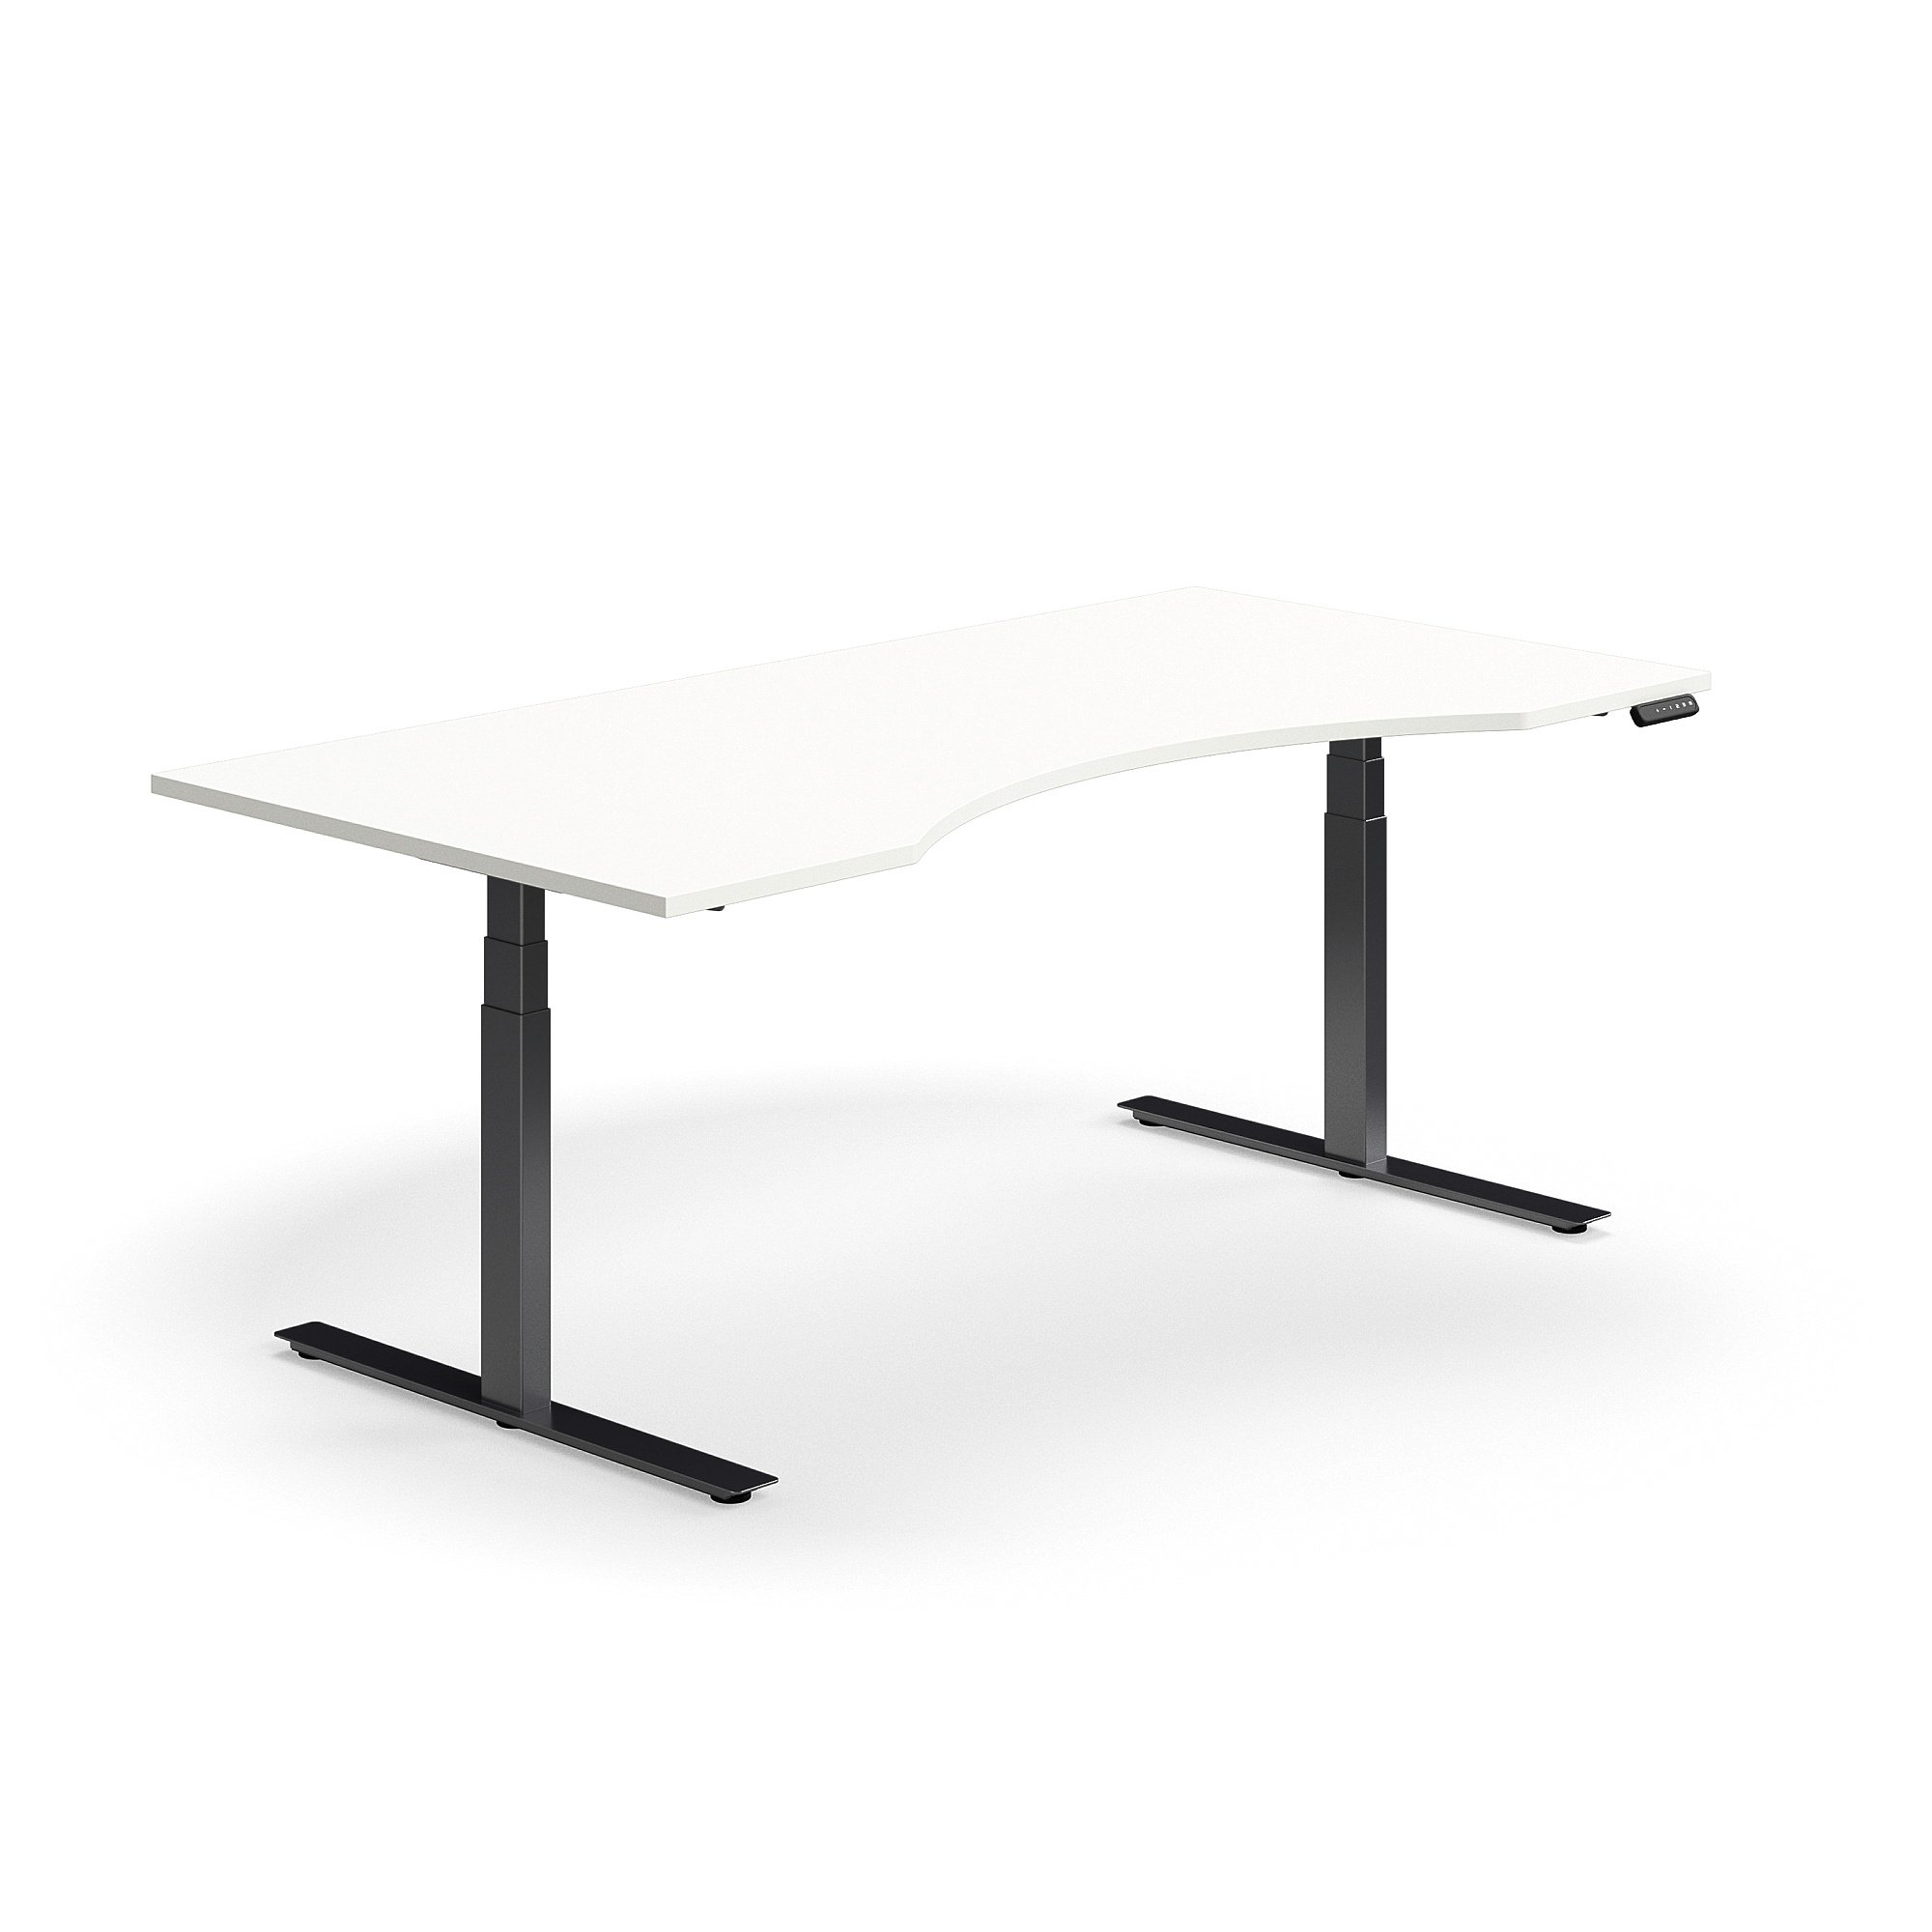 Výškově nastavitelný stůl QBUS, vykrojený, 2000x1000 mm, černá podnož, bílá